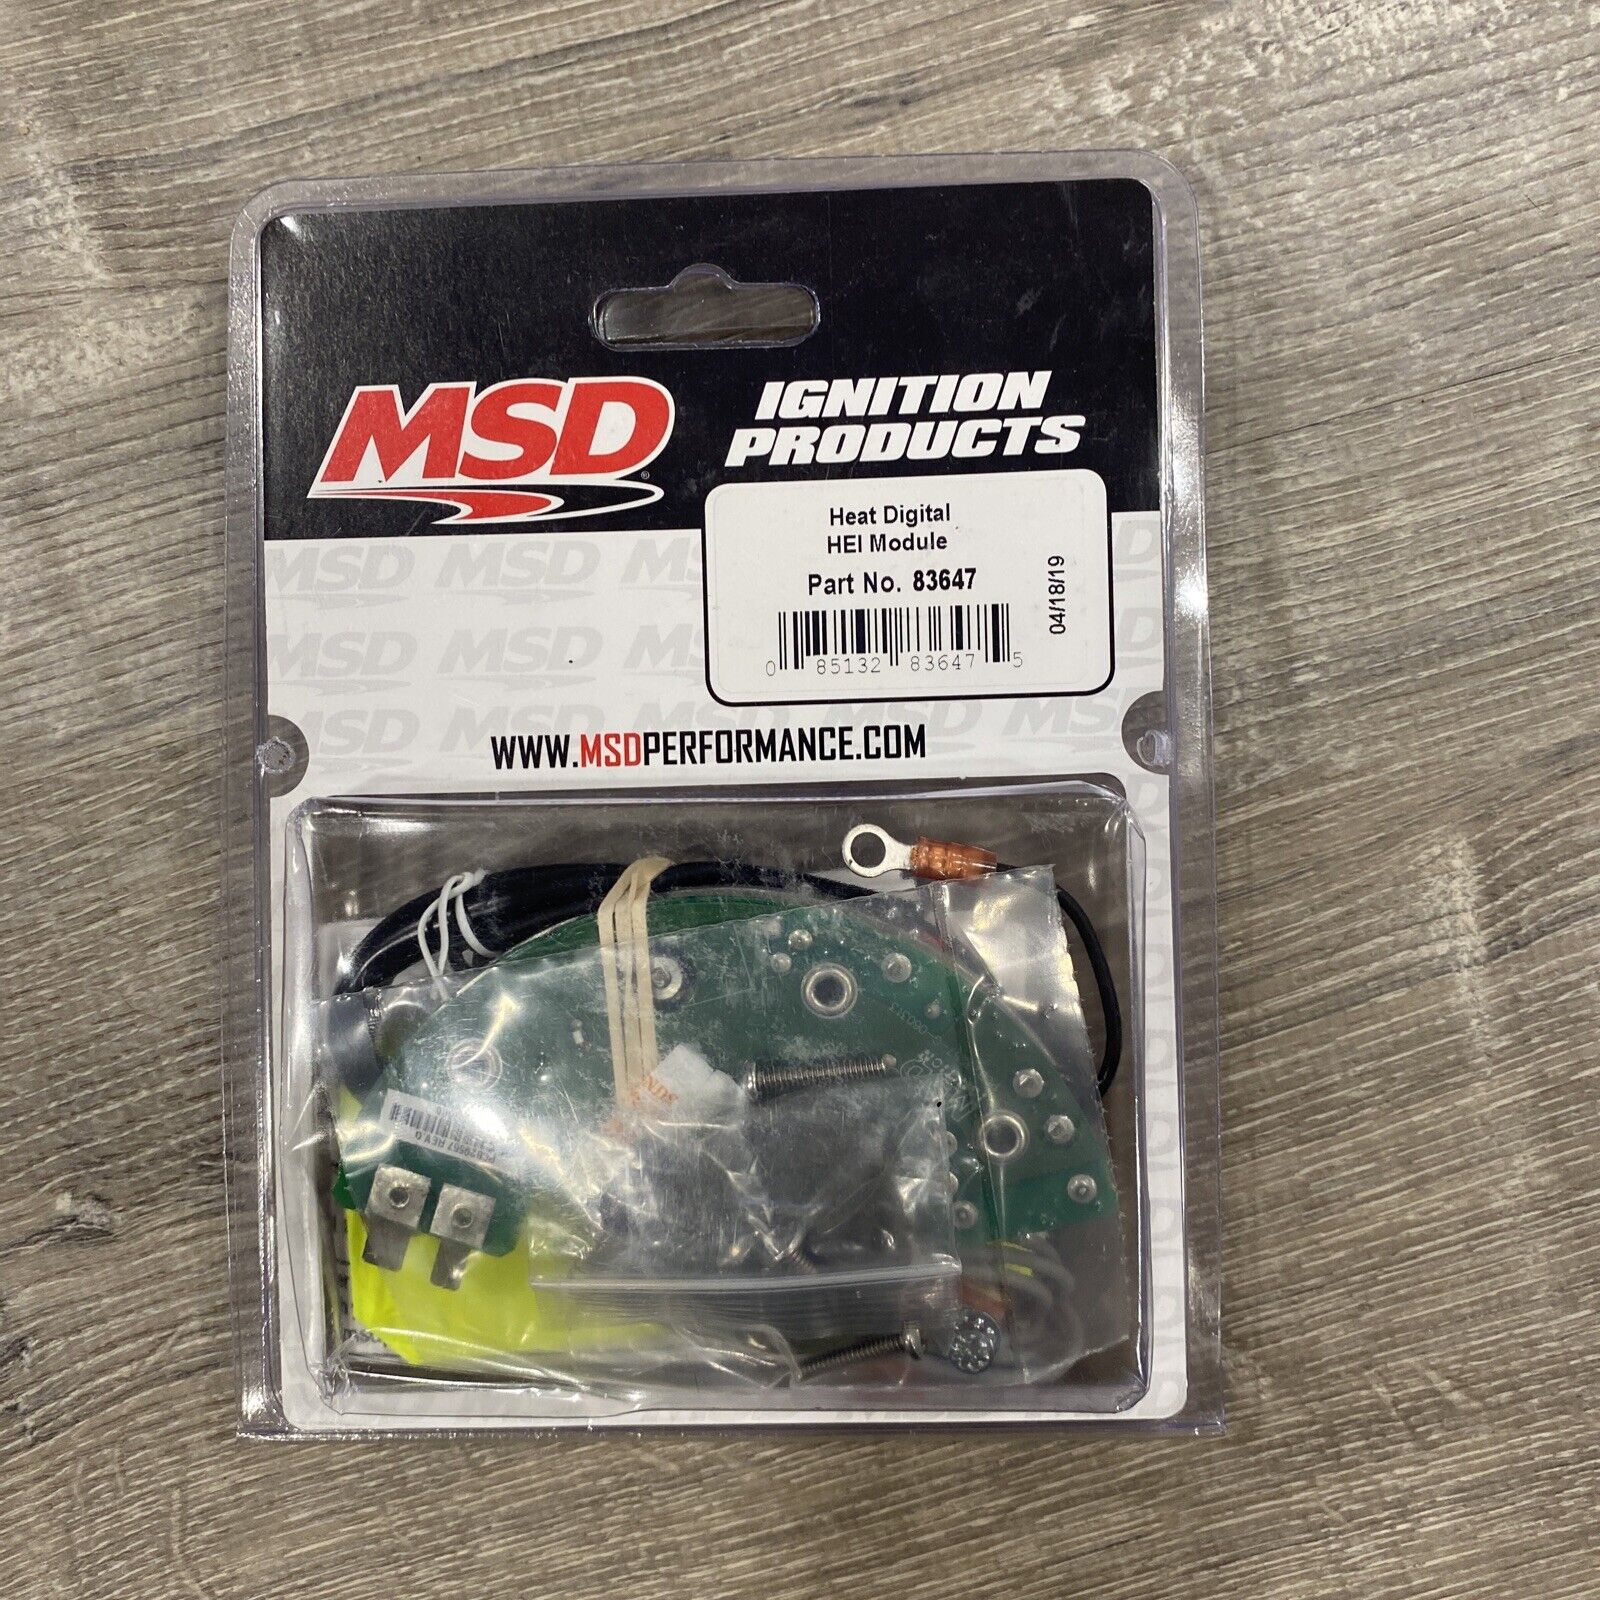 New MSD 83647 for GM Heat Digital HEI Module    AM Korzystna sprzedaż wysyłkowa